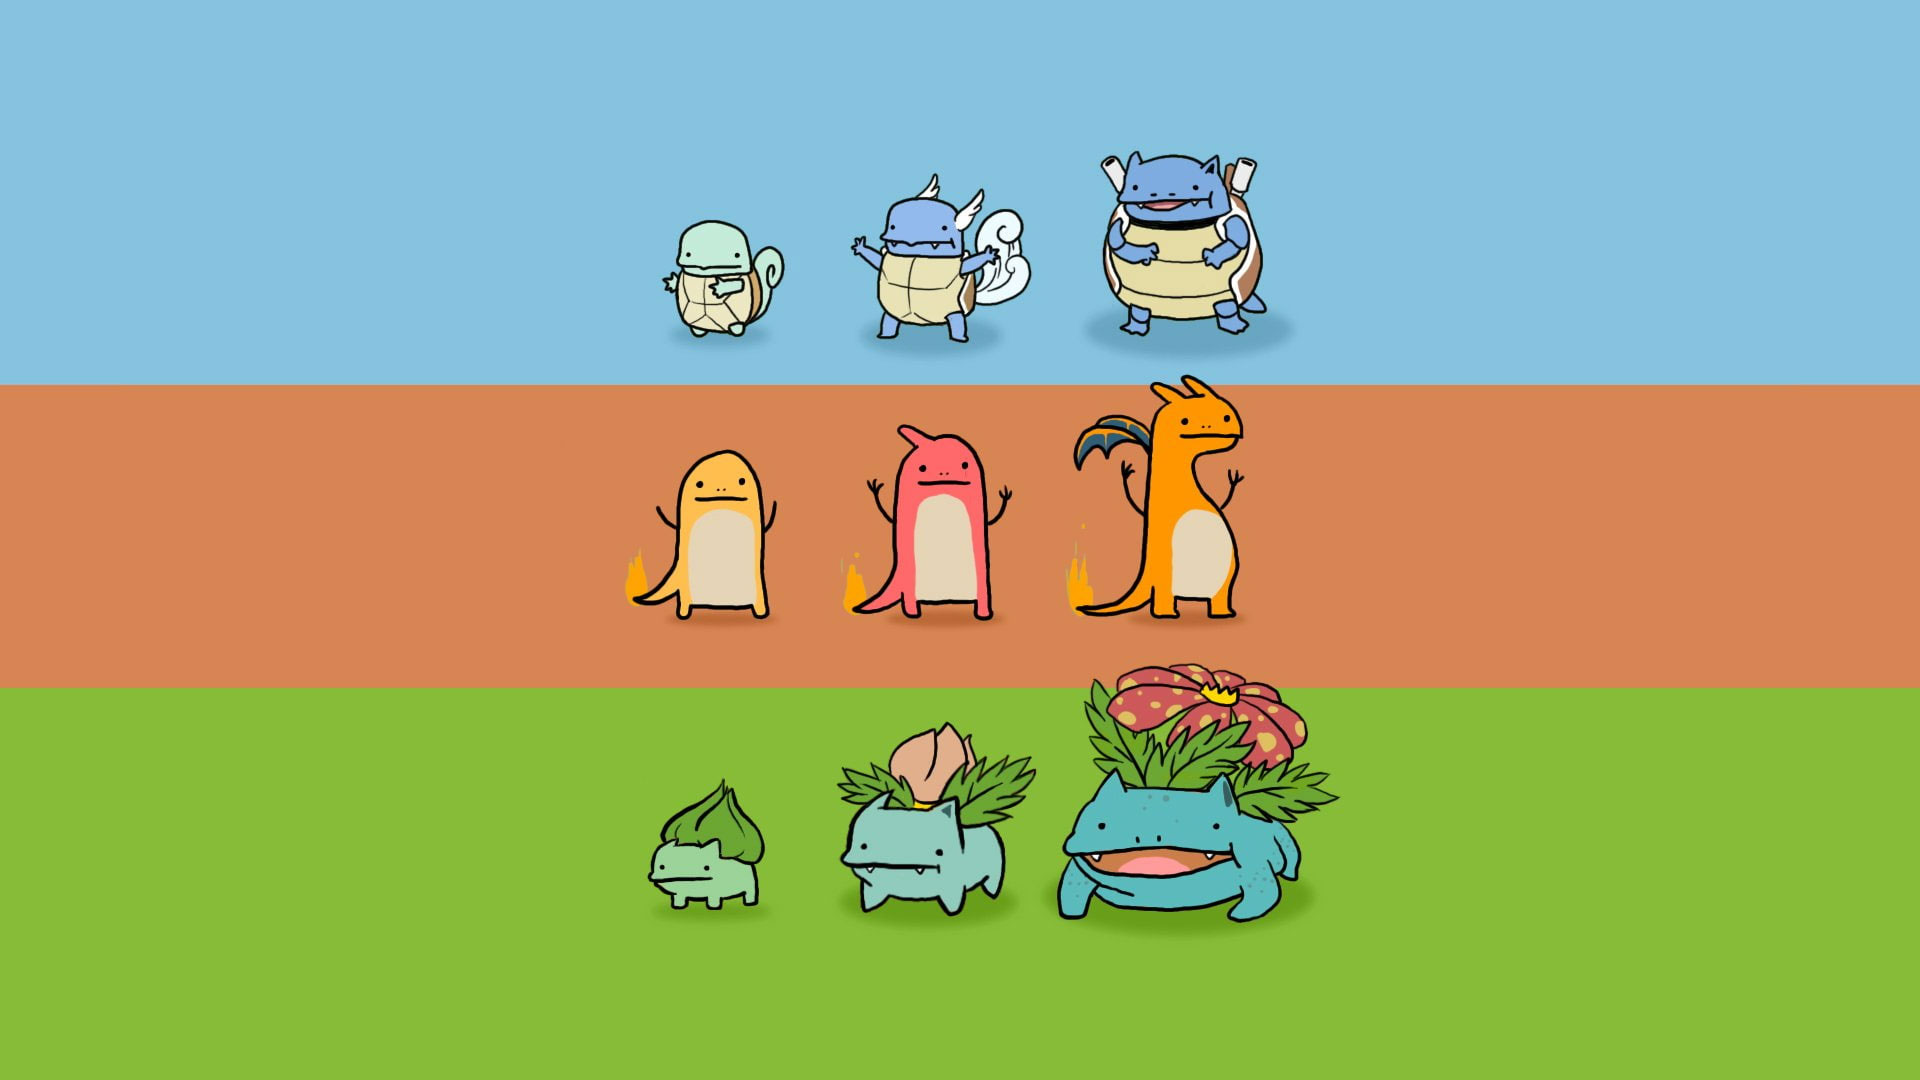 Wallpaper Pokemon, Blastoise Pokemon, Bulbasaur